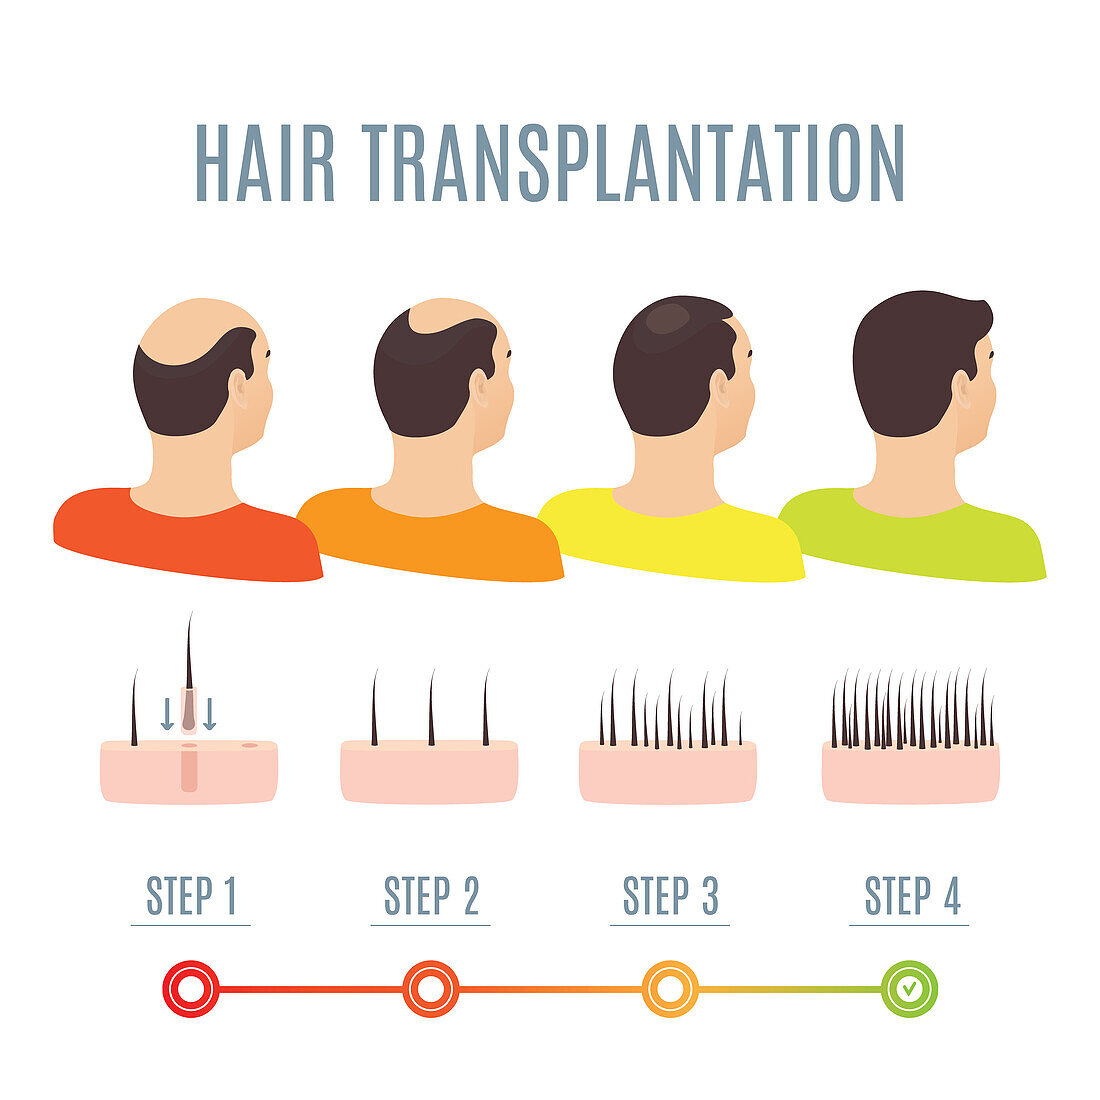 Hair transplantation, illustration